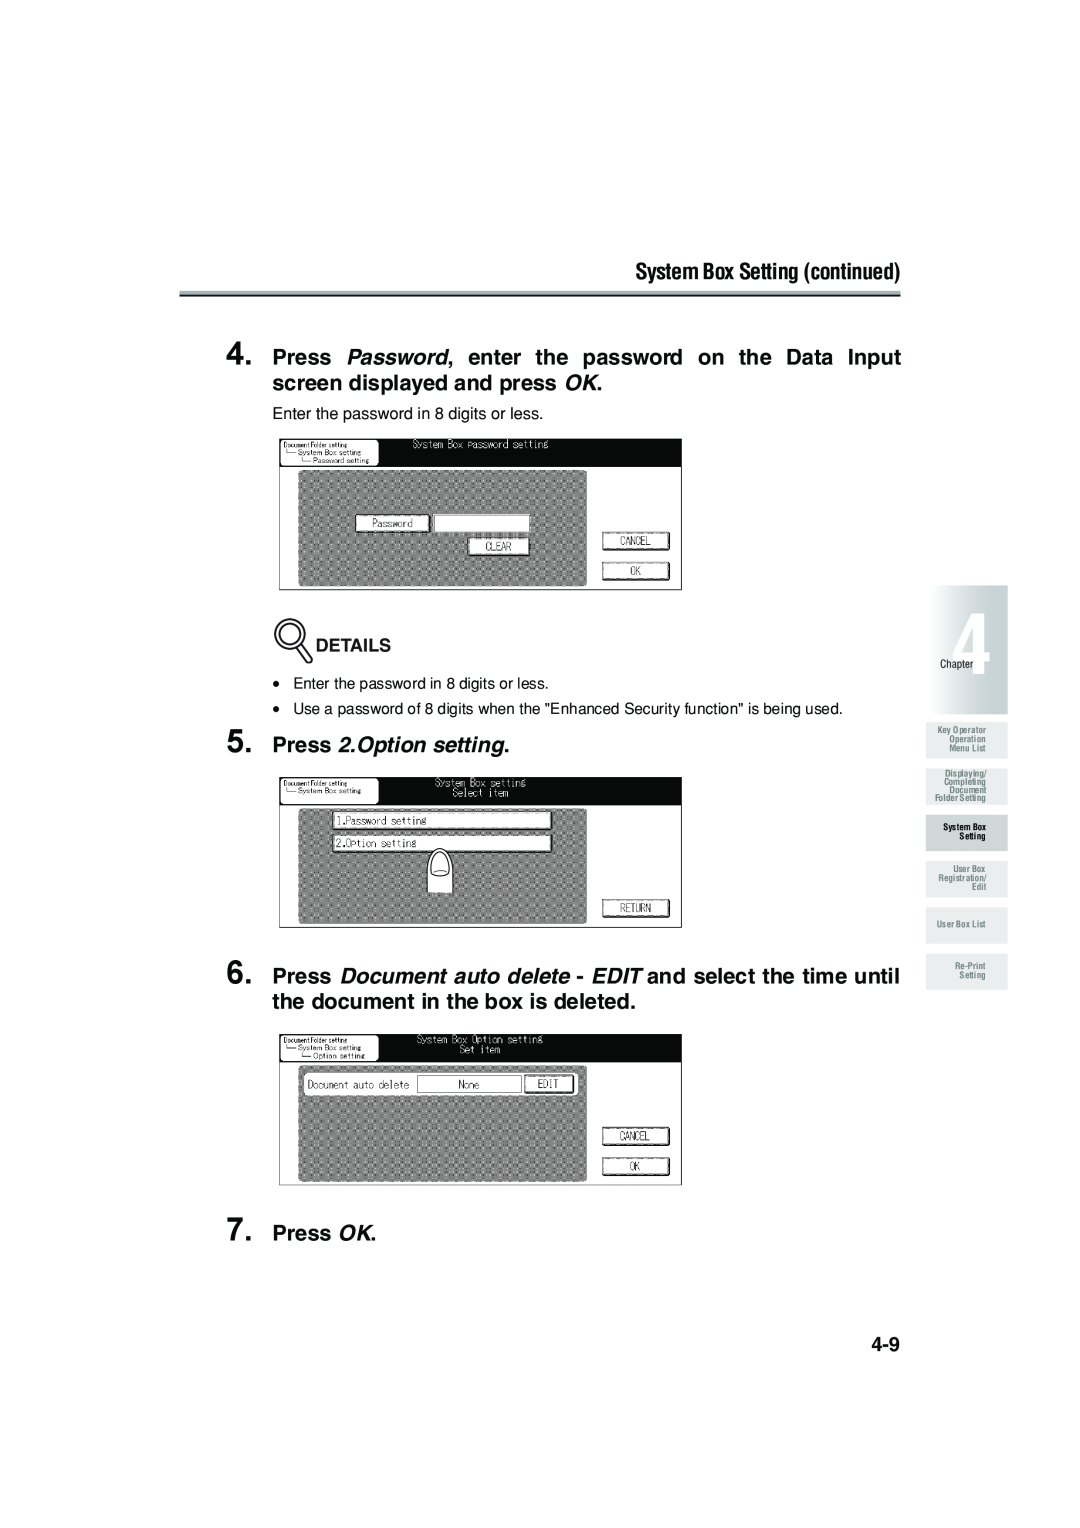 Konica Minolta 7222 manual Press 2.Option setting, Press OK, System Box Setting continued 